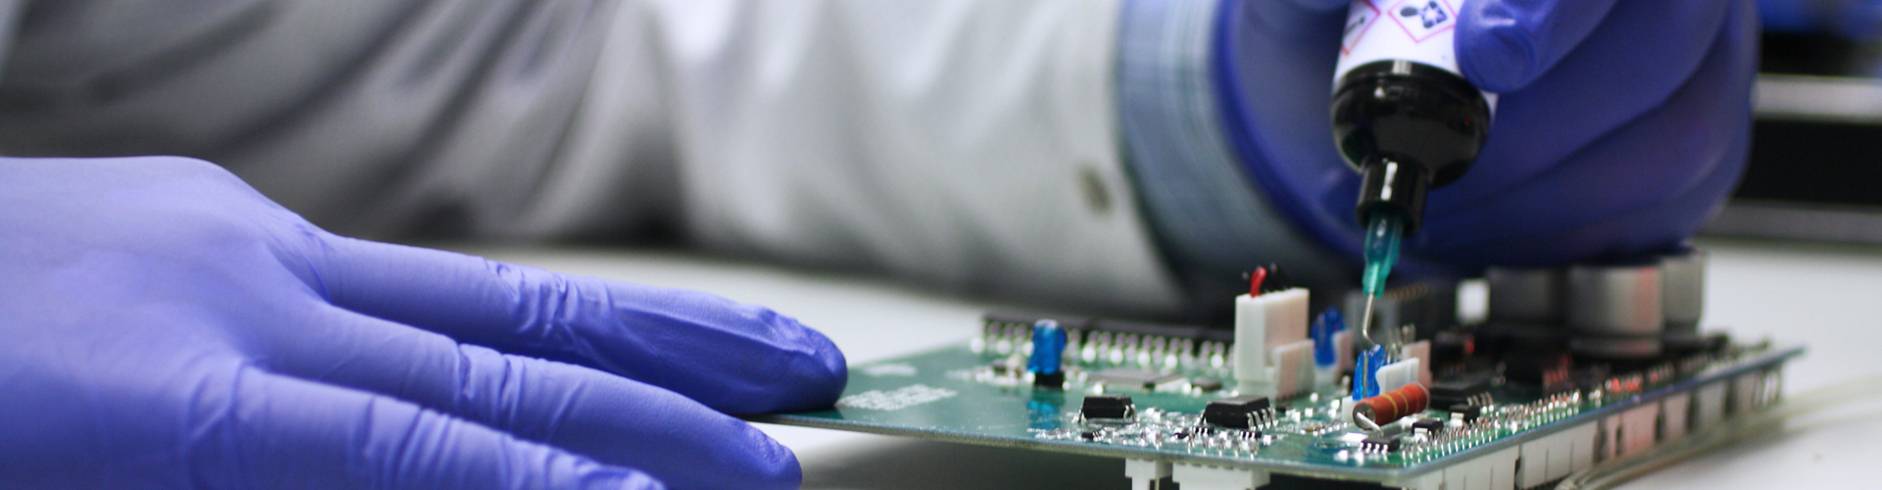 Adhesivos y recubrimientos para electrónica de Dymax aplicados a una tarjeta de circuitos